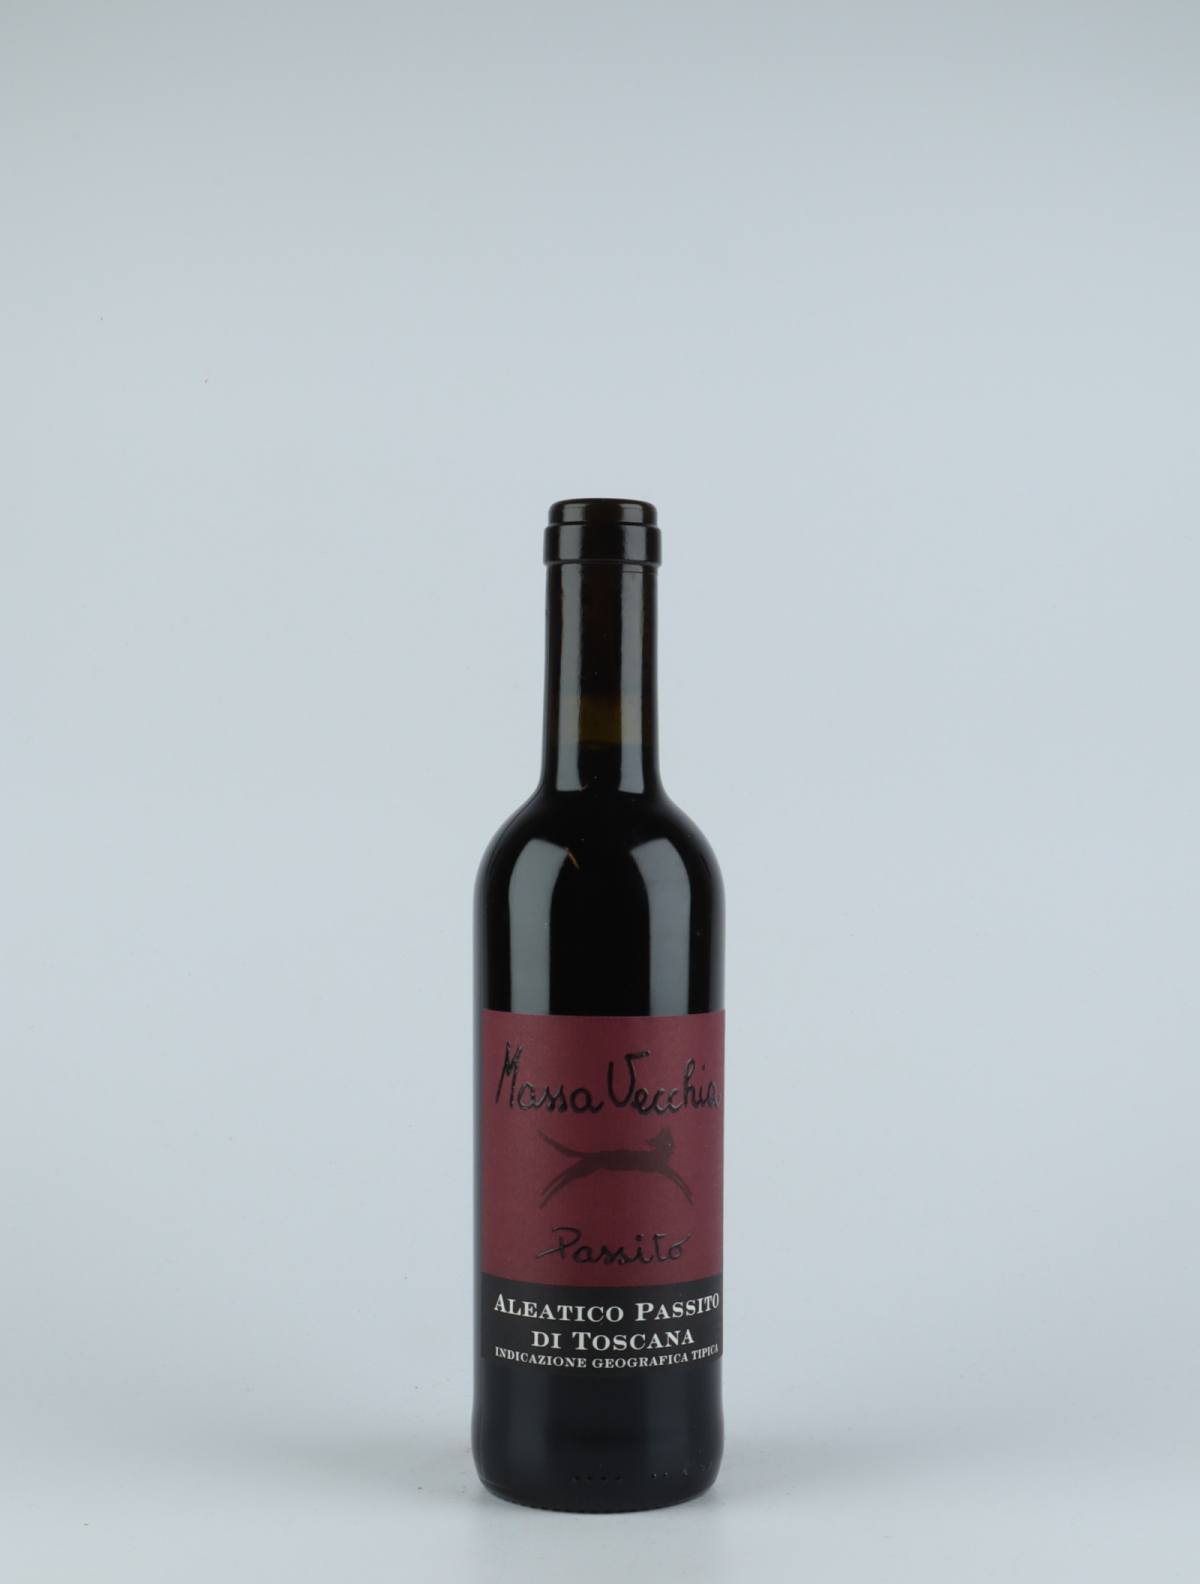 En flaske 2015 Passito Aleatico Sød vin fra Massa Vecchia, Toscana i Italien